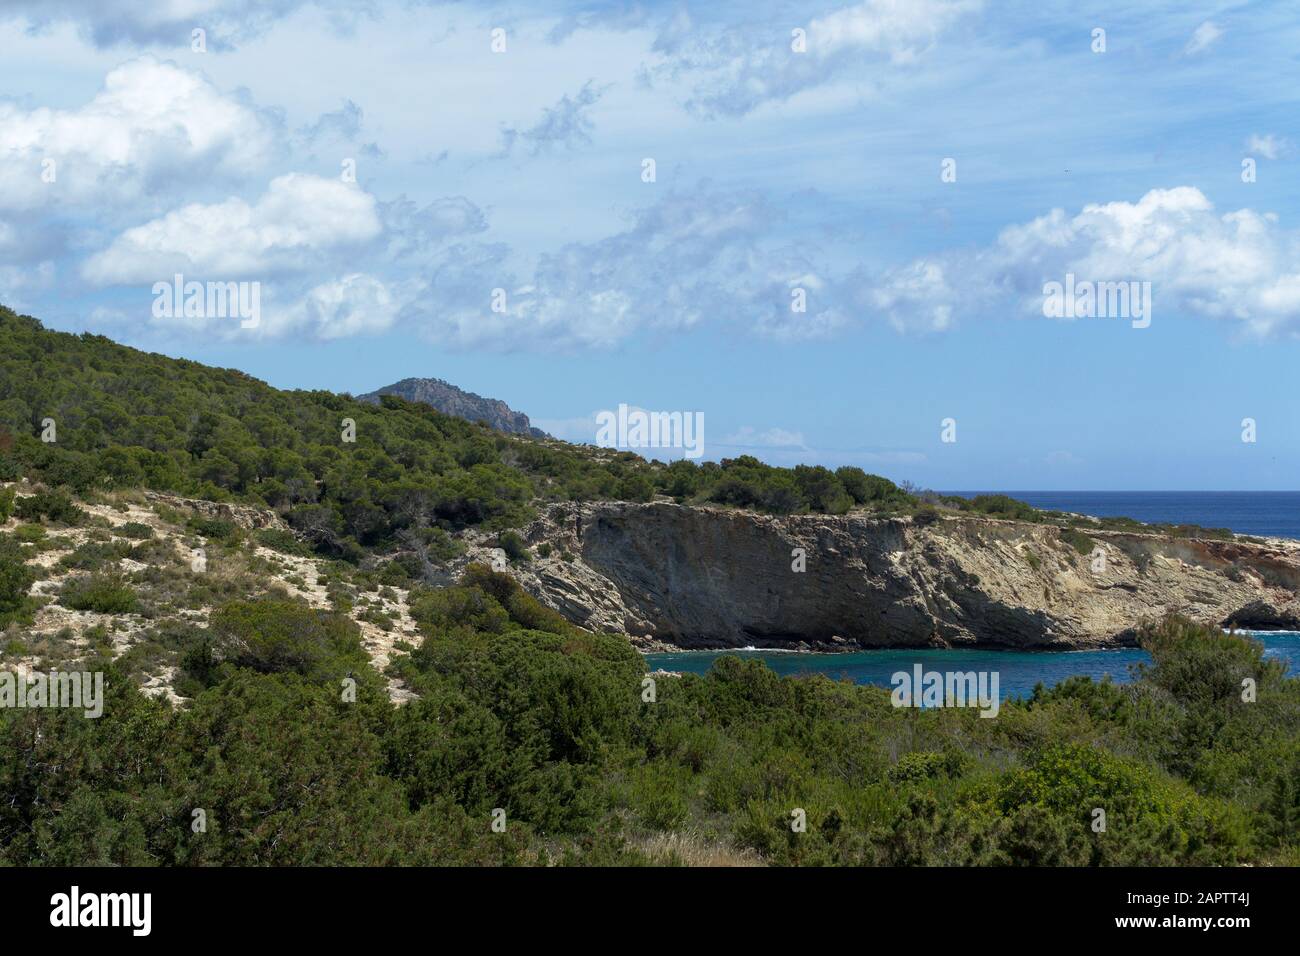 Costa rocciosa al mare con vegetazione, acqua blu e cielo nuvoloso. Isola di Ibiza, Spagna Foto Stock